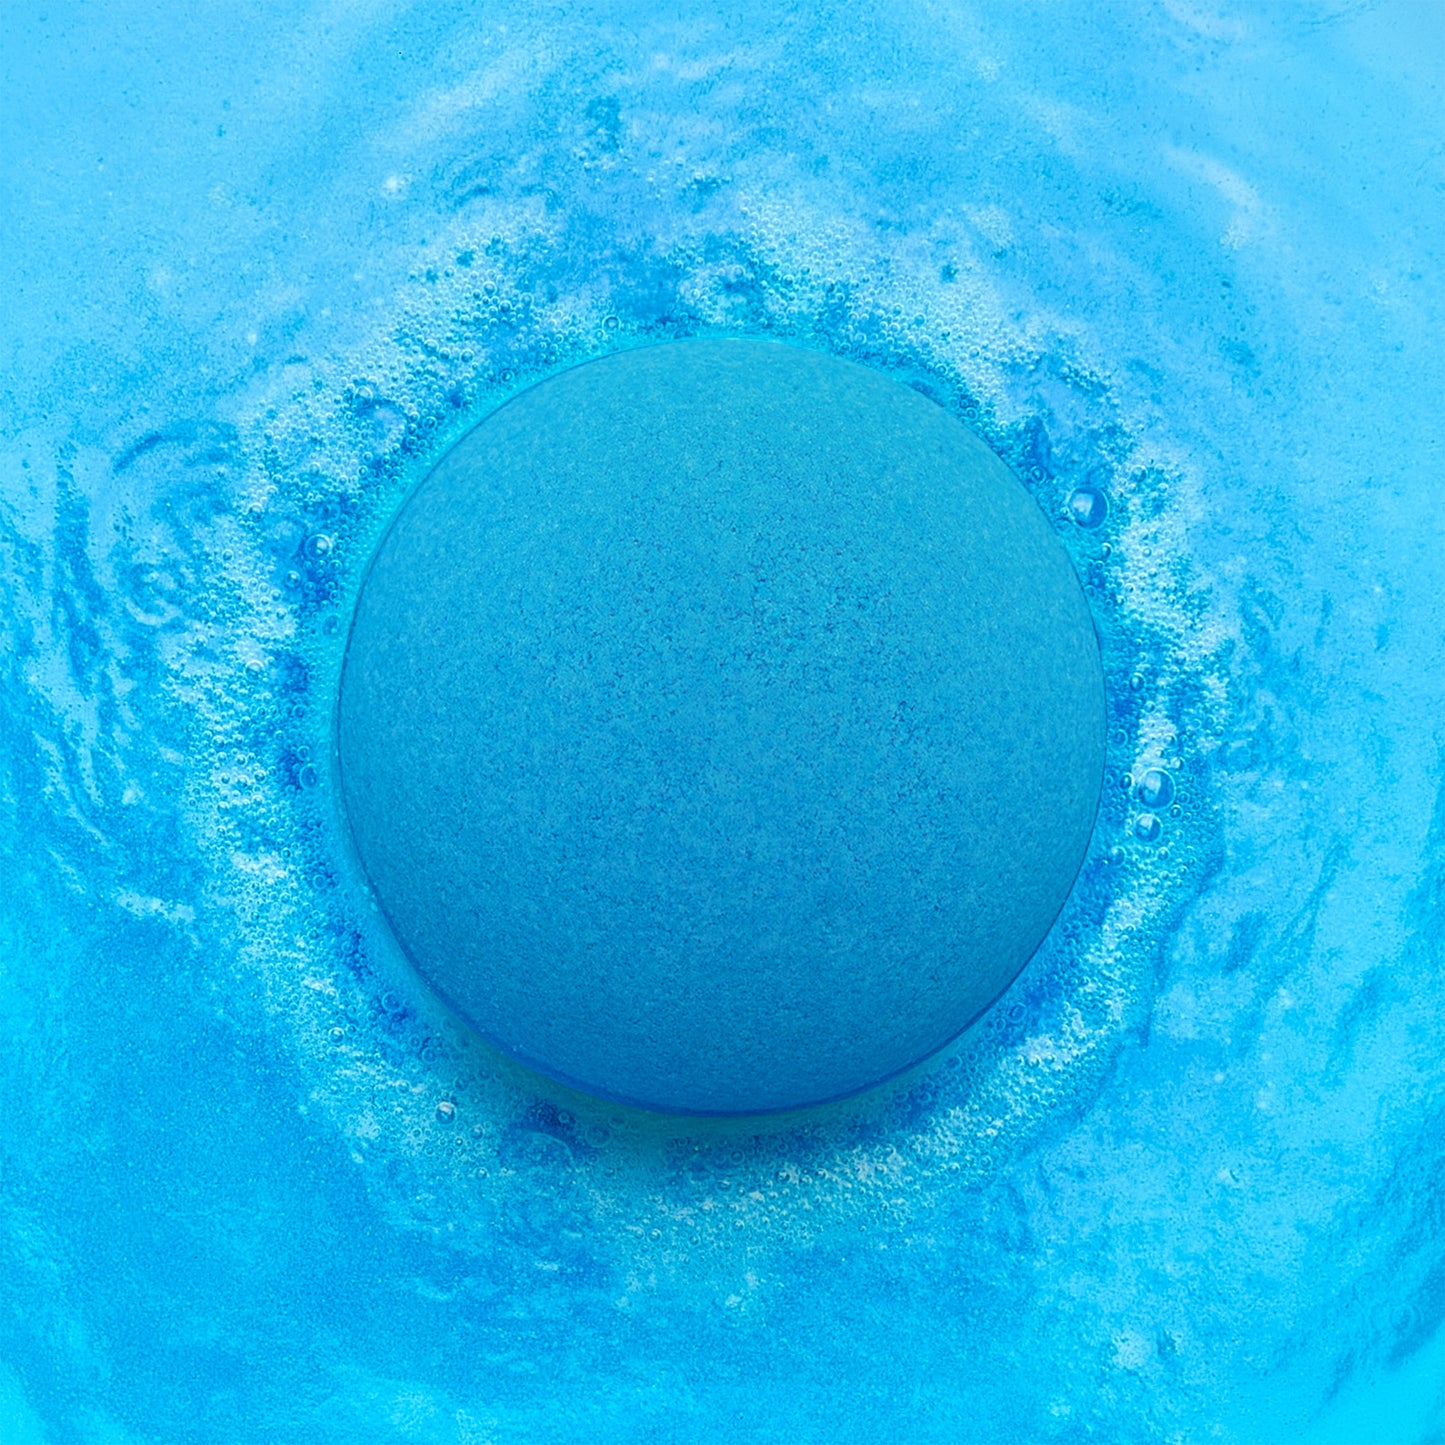 a blue bath bomb fizzing in blue water